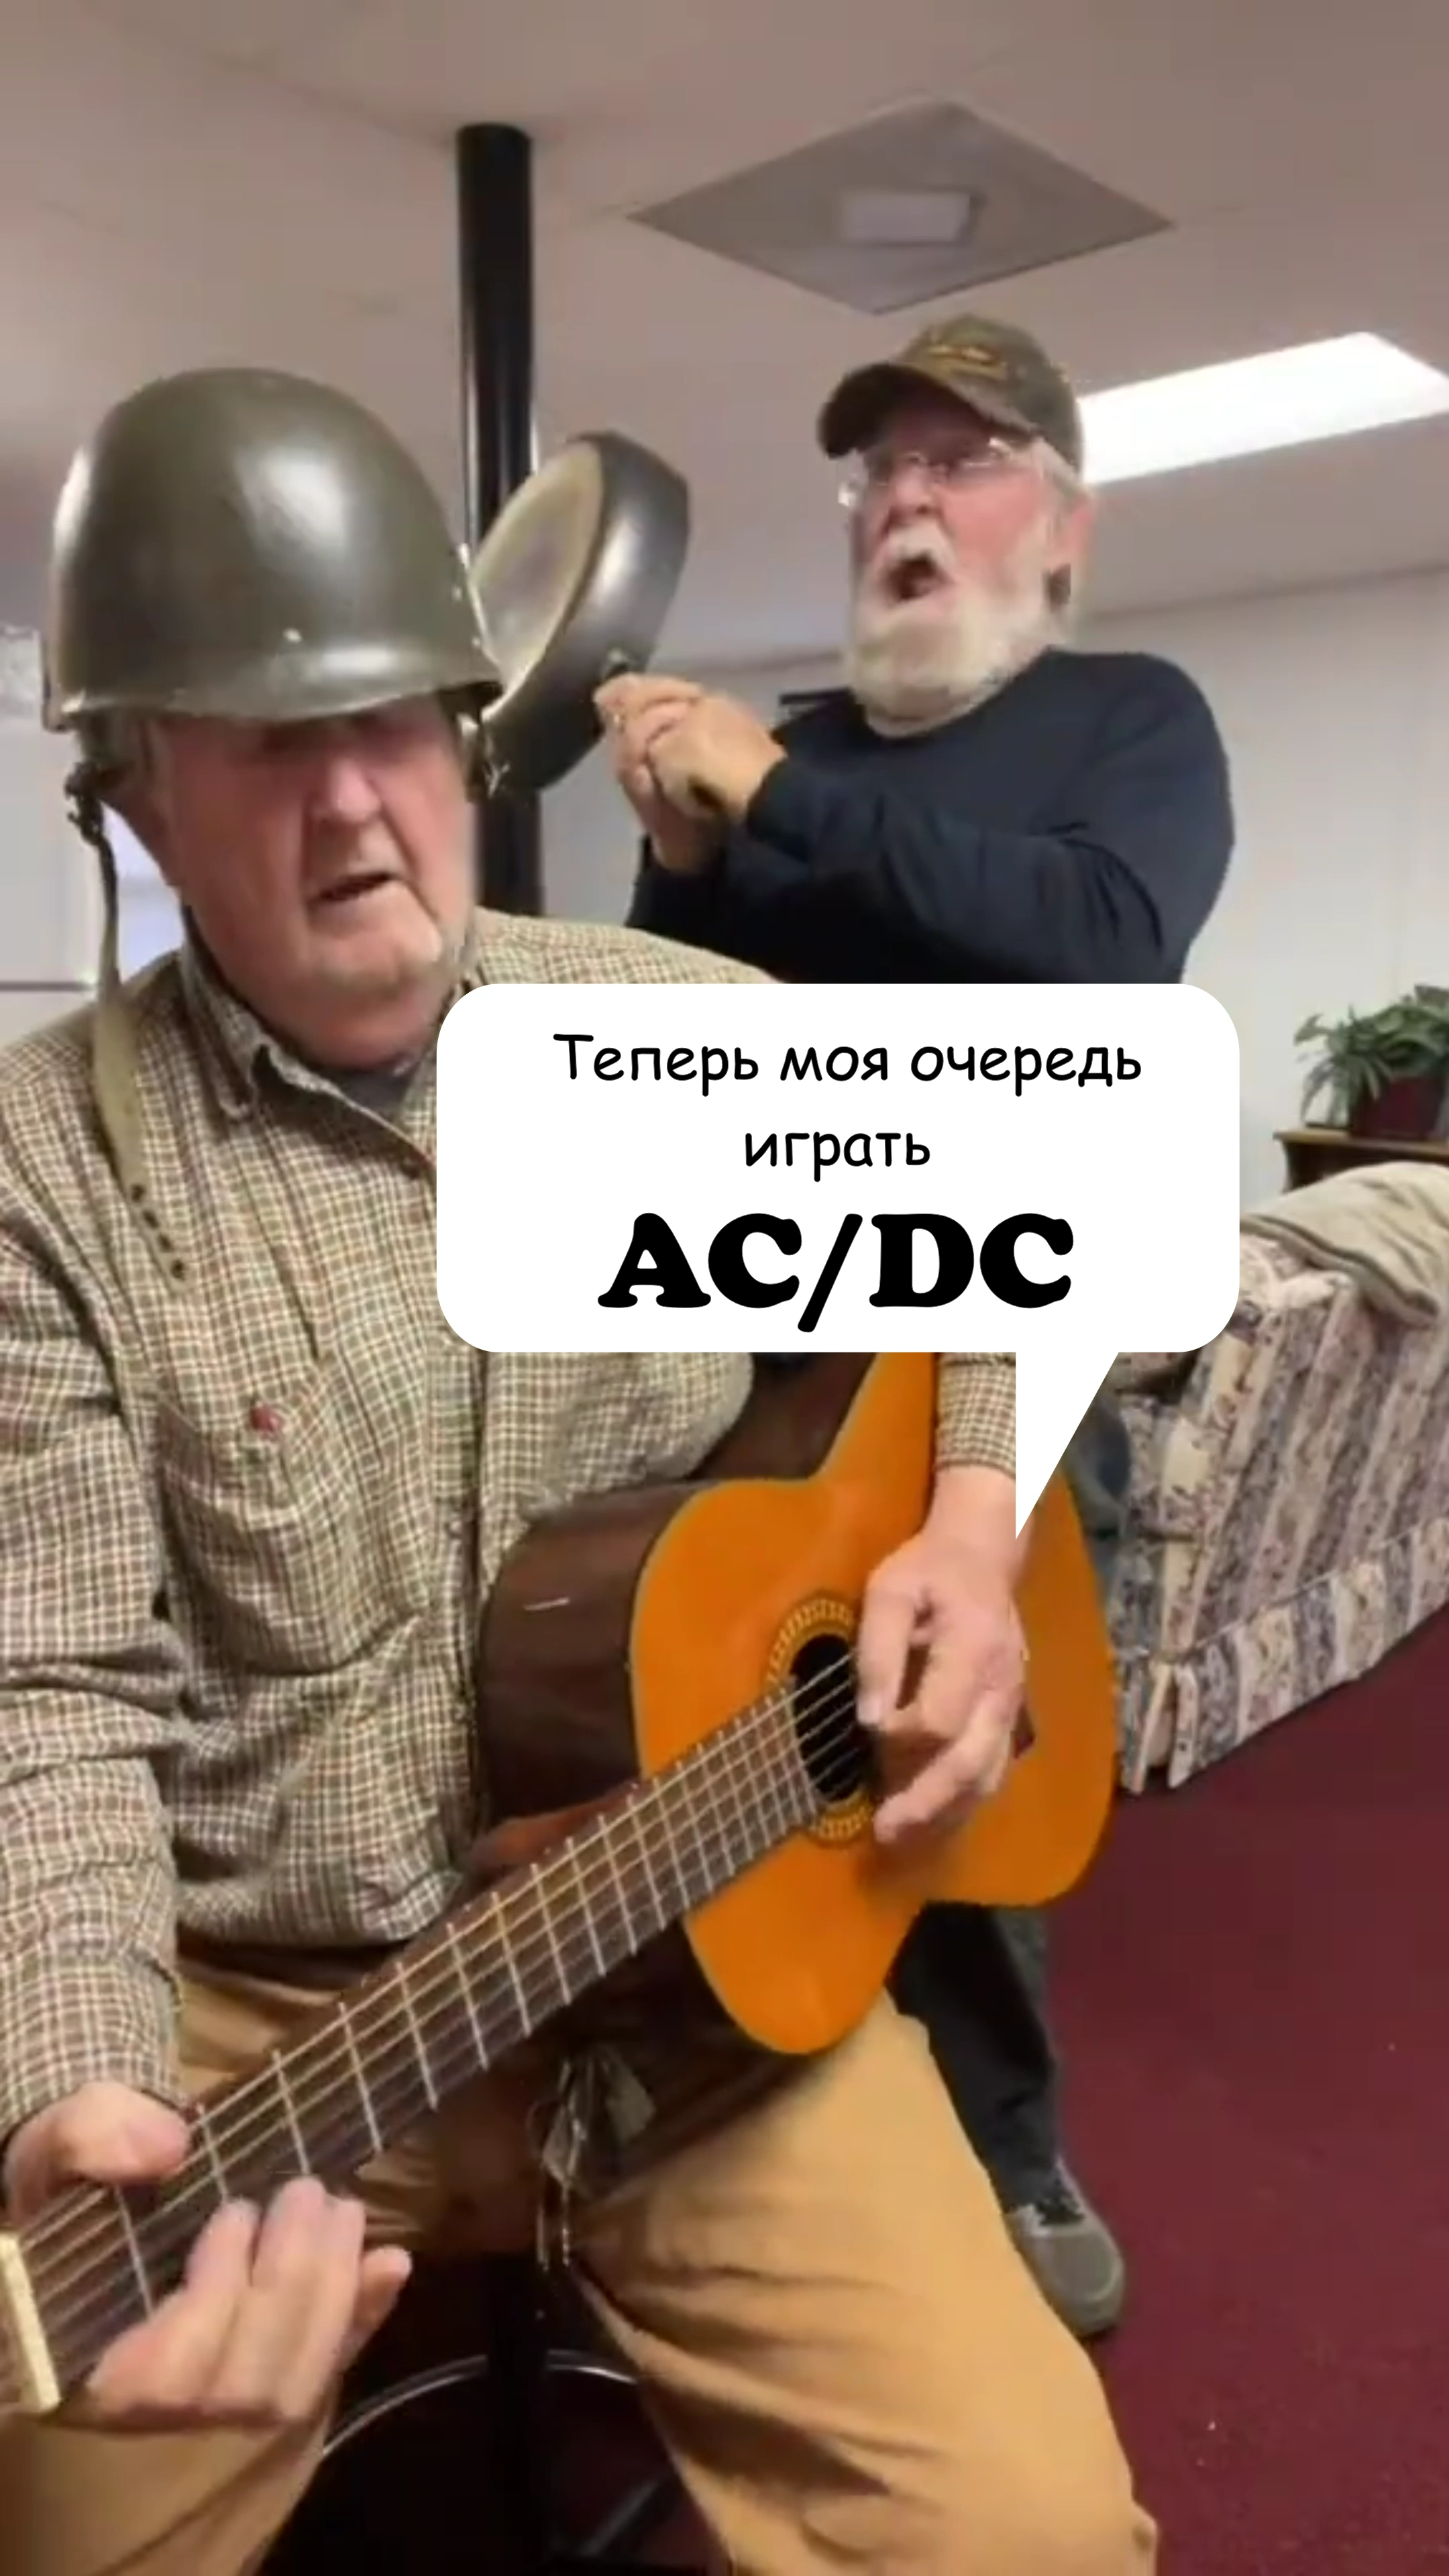 Теперь моя очередь играть AC/DC